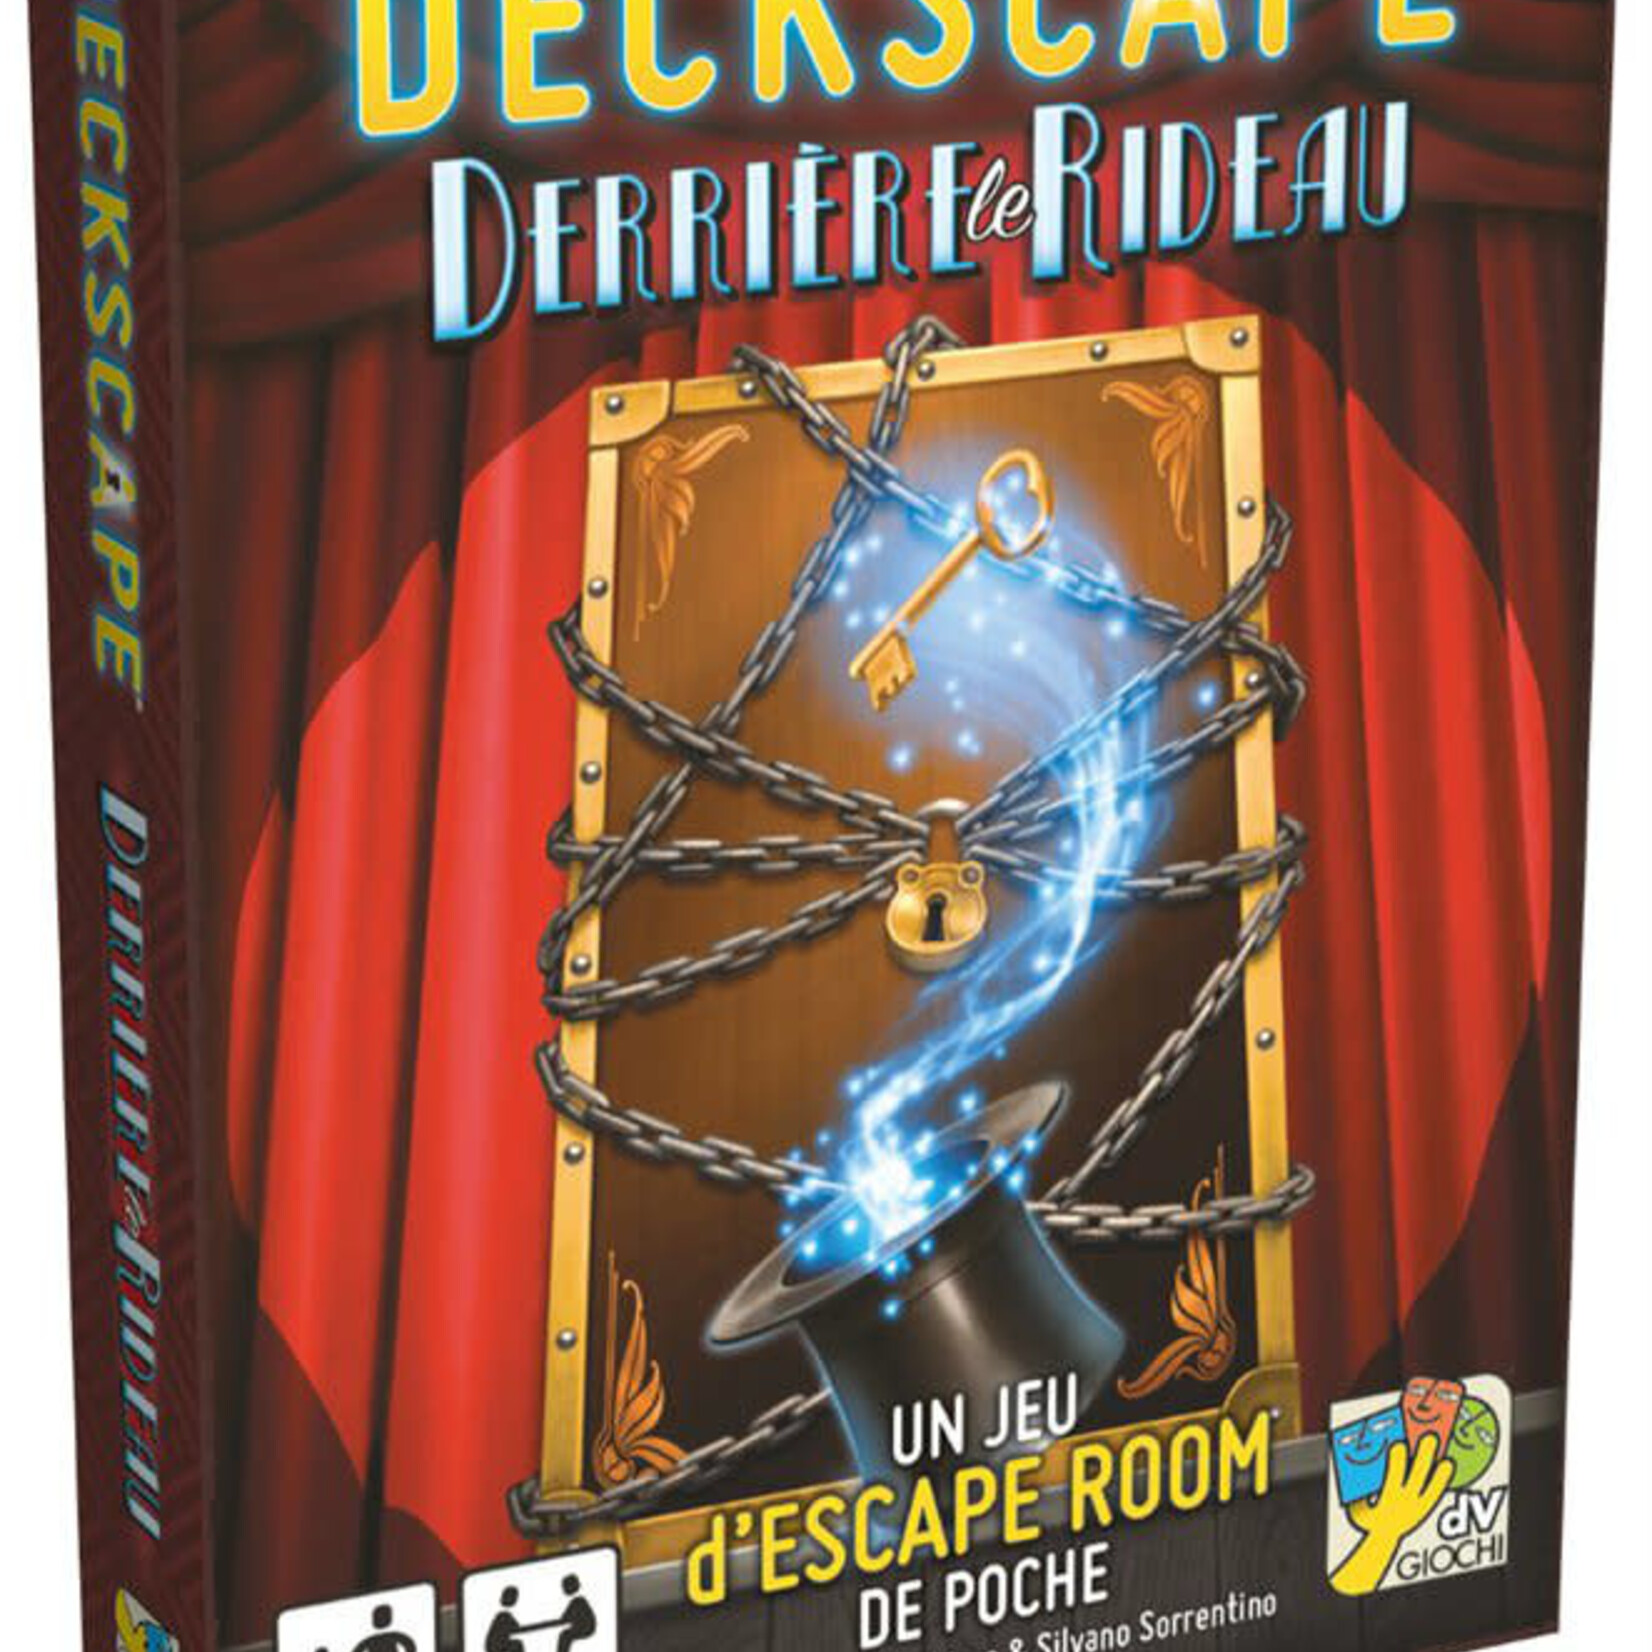 Super Meeple Deckscape 5 - Derriere le  rideau